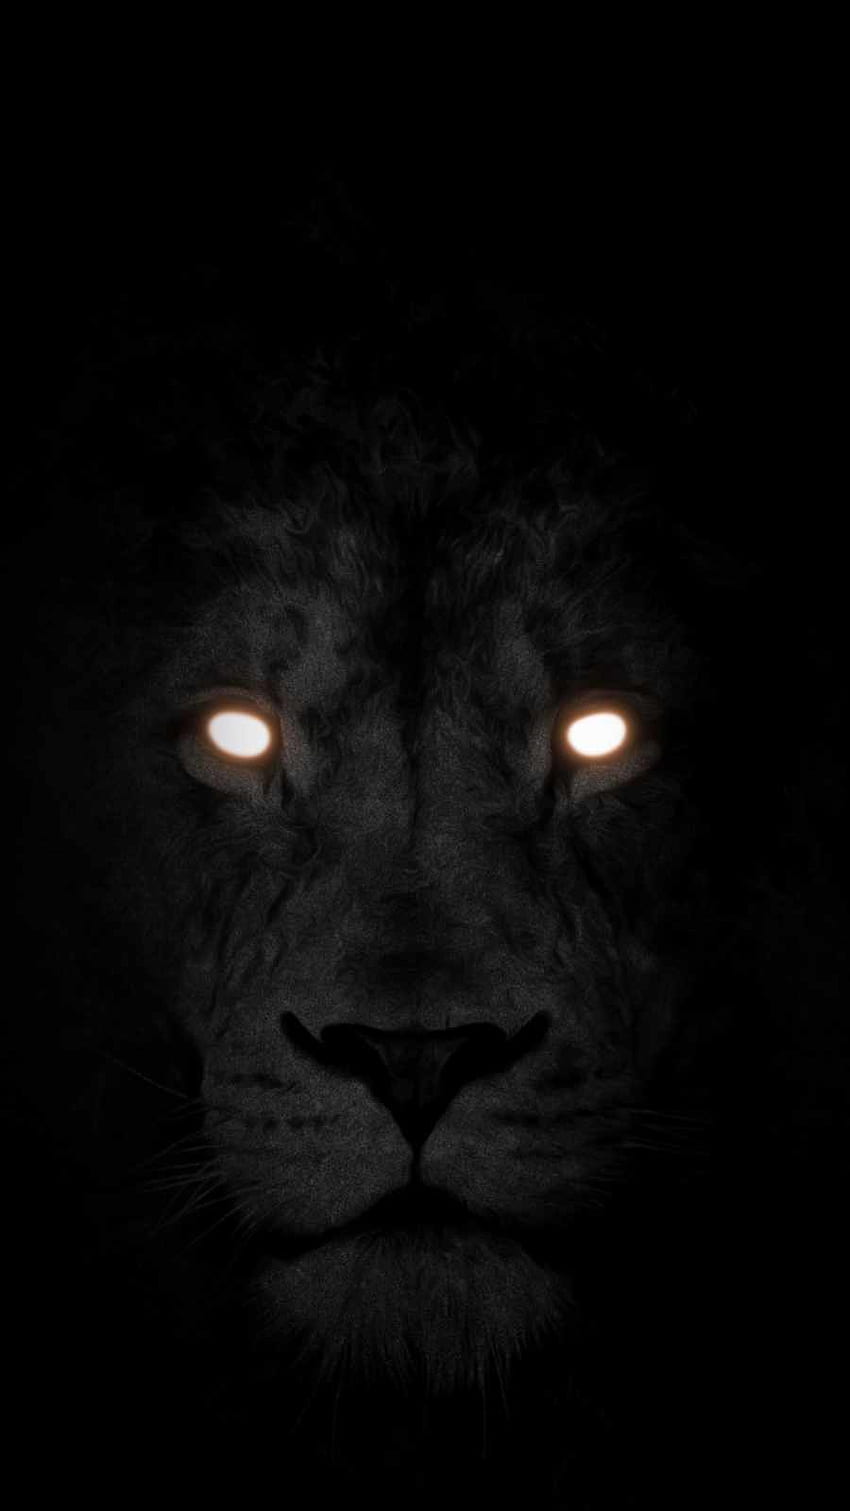 Lion Eyes Images - Free Download on Freepik